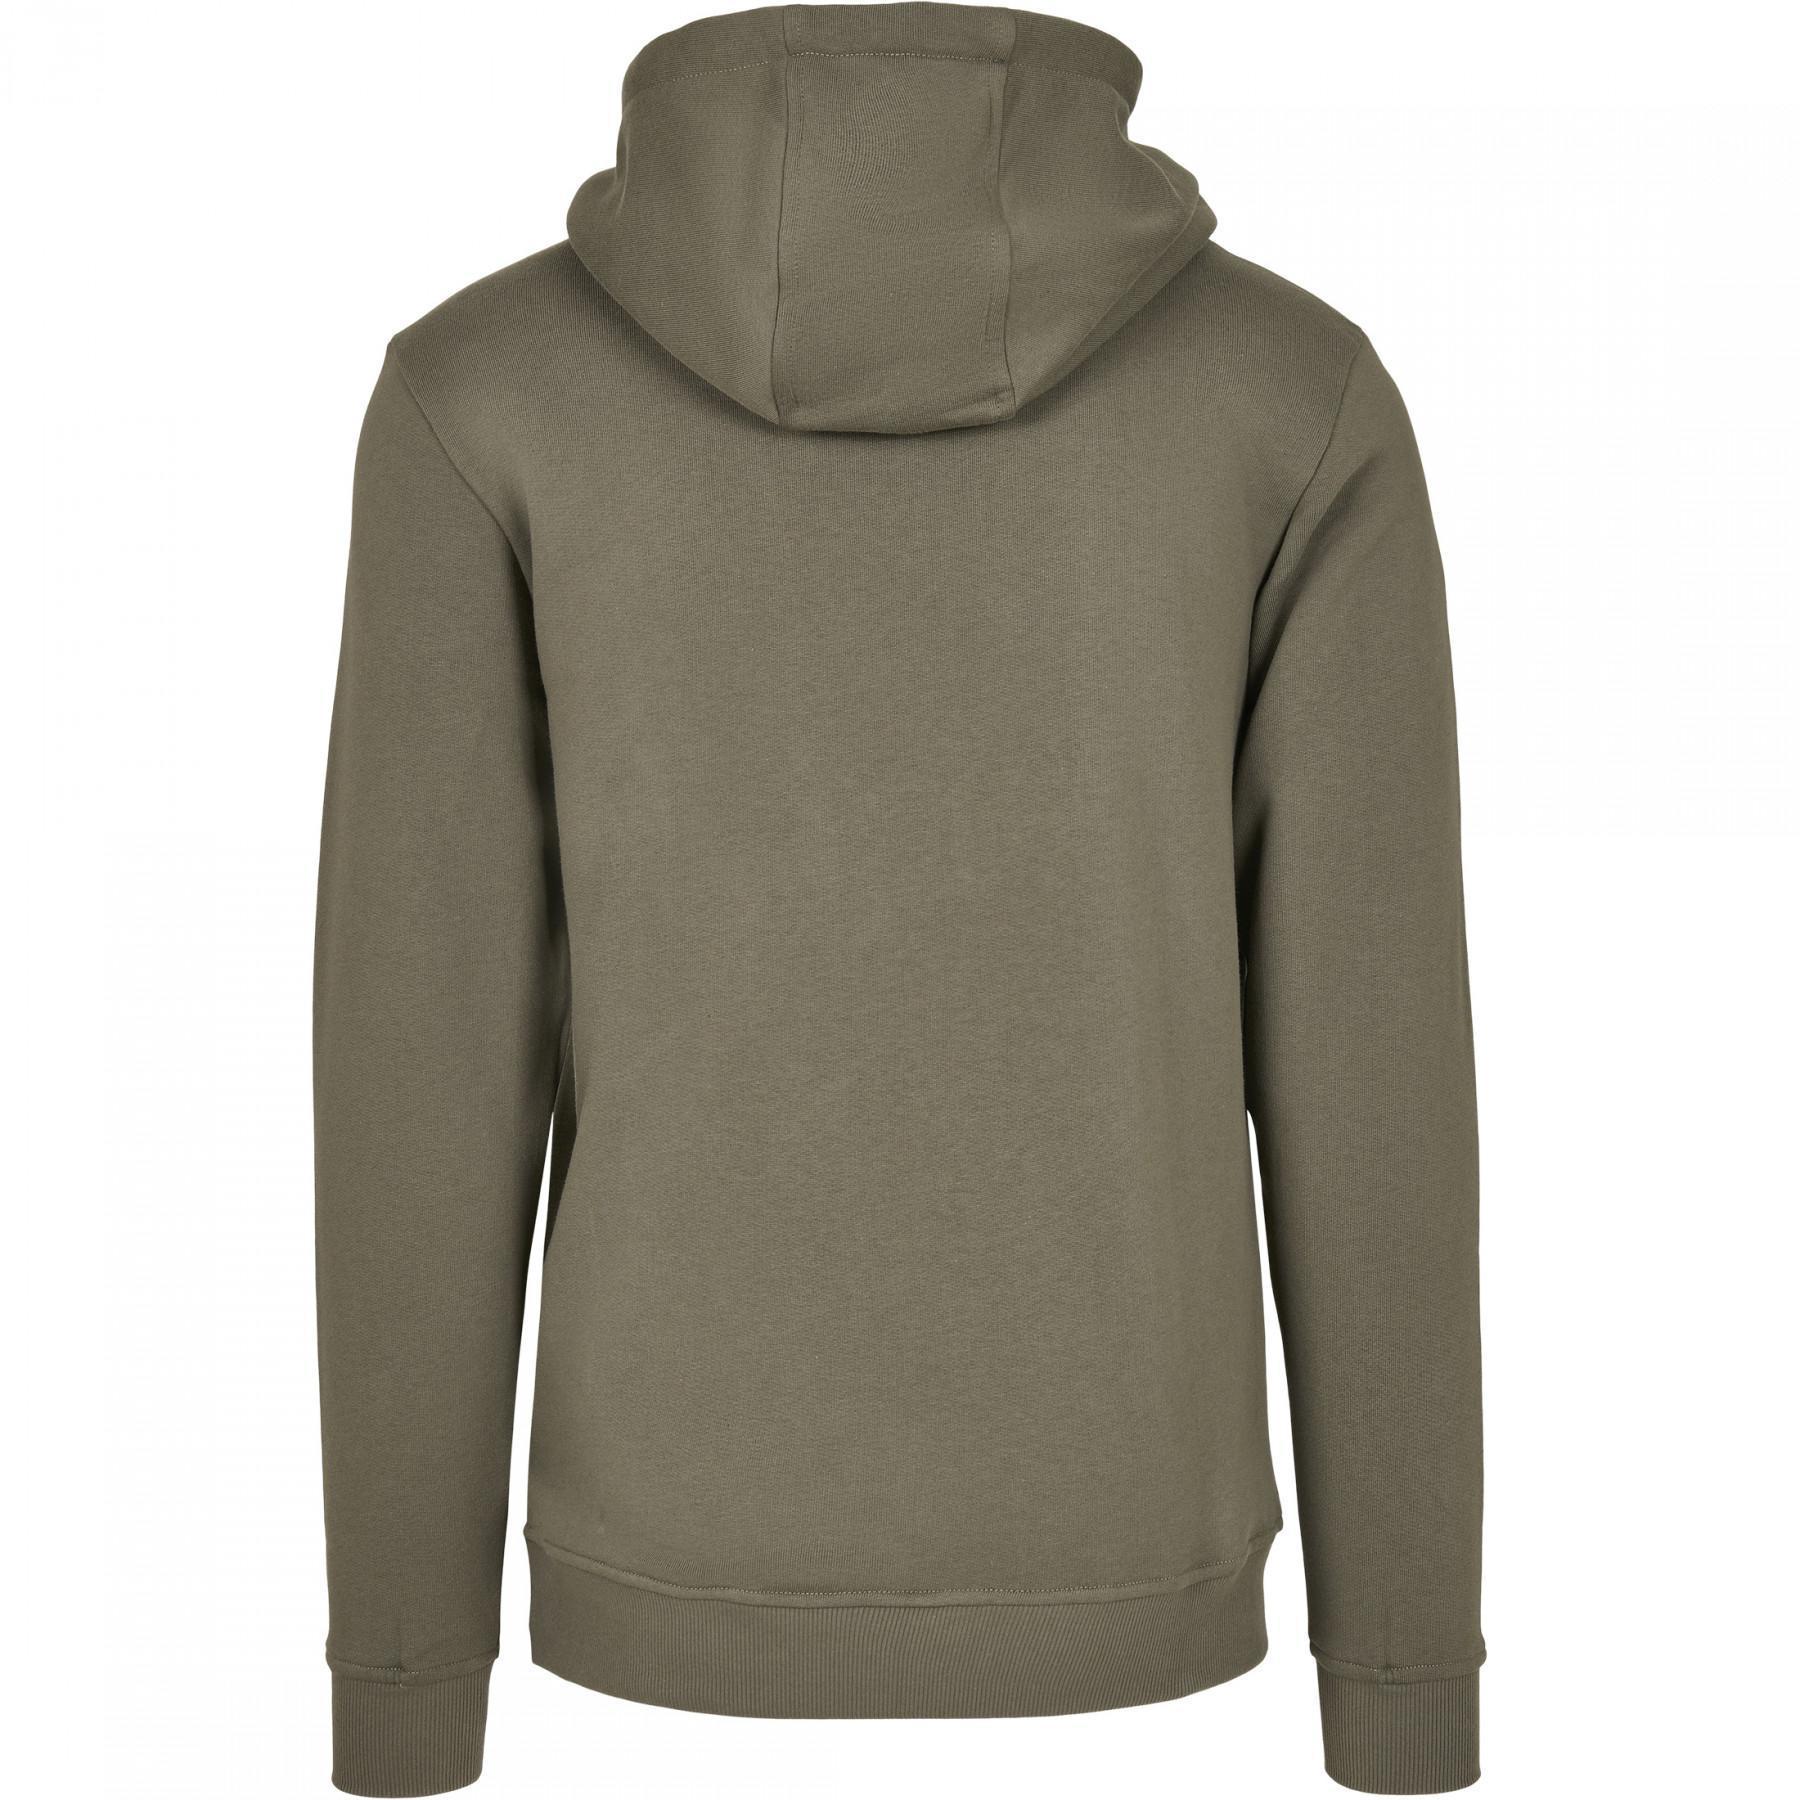 Hooded sweatshirt Urban Classics organic basic (large sizes)